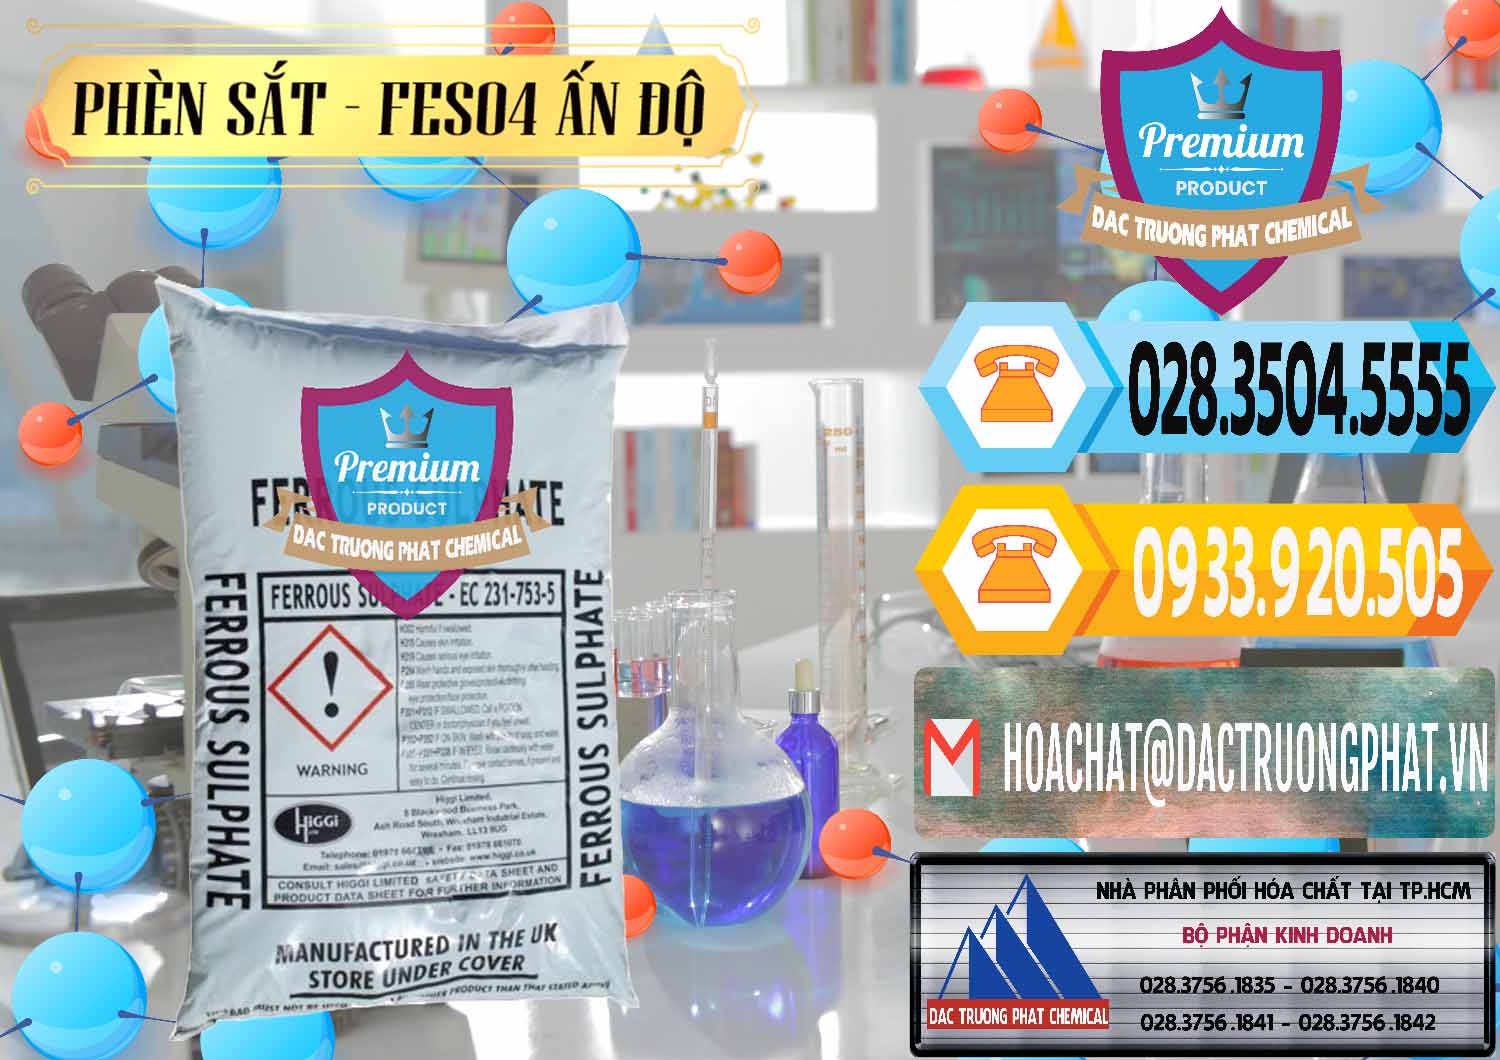 Nơi phân phối và bán Phèn Sắt - FeSO4.7H2O Ấn Độ India - 0354 - Công ty chuyên kinh doanh & phân phối hóa chất tại TP.HCM - hoachattayrua.net